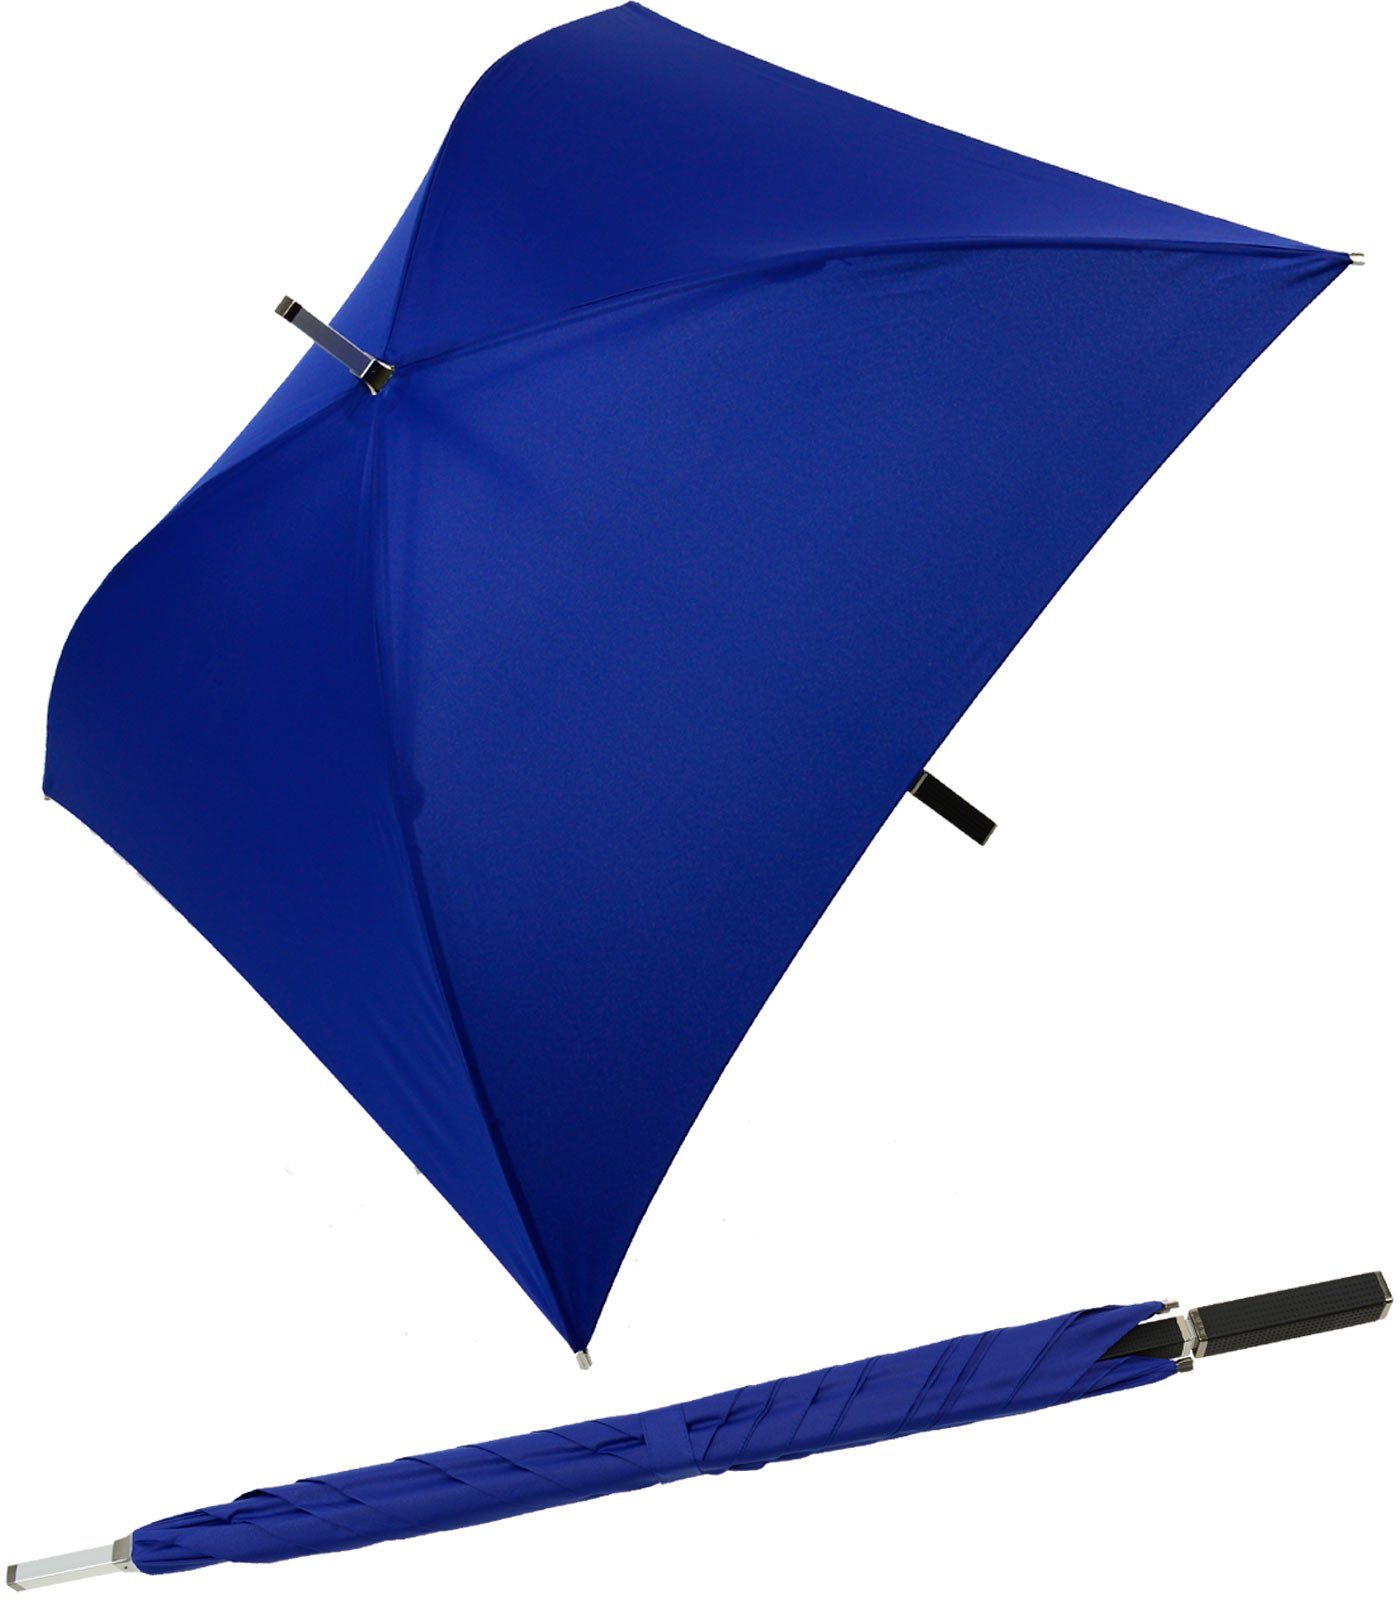 Impliva Langregenschirm All Square® voll quadratischer Regenschirm, der ganz besondere Regenschirm blau | Stockschirme